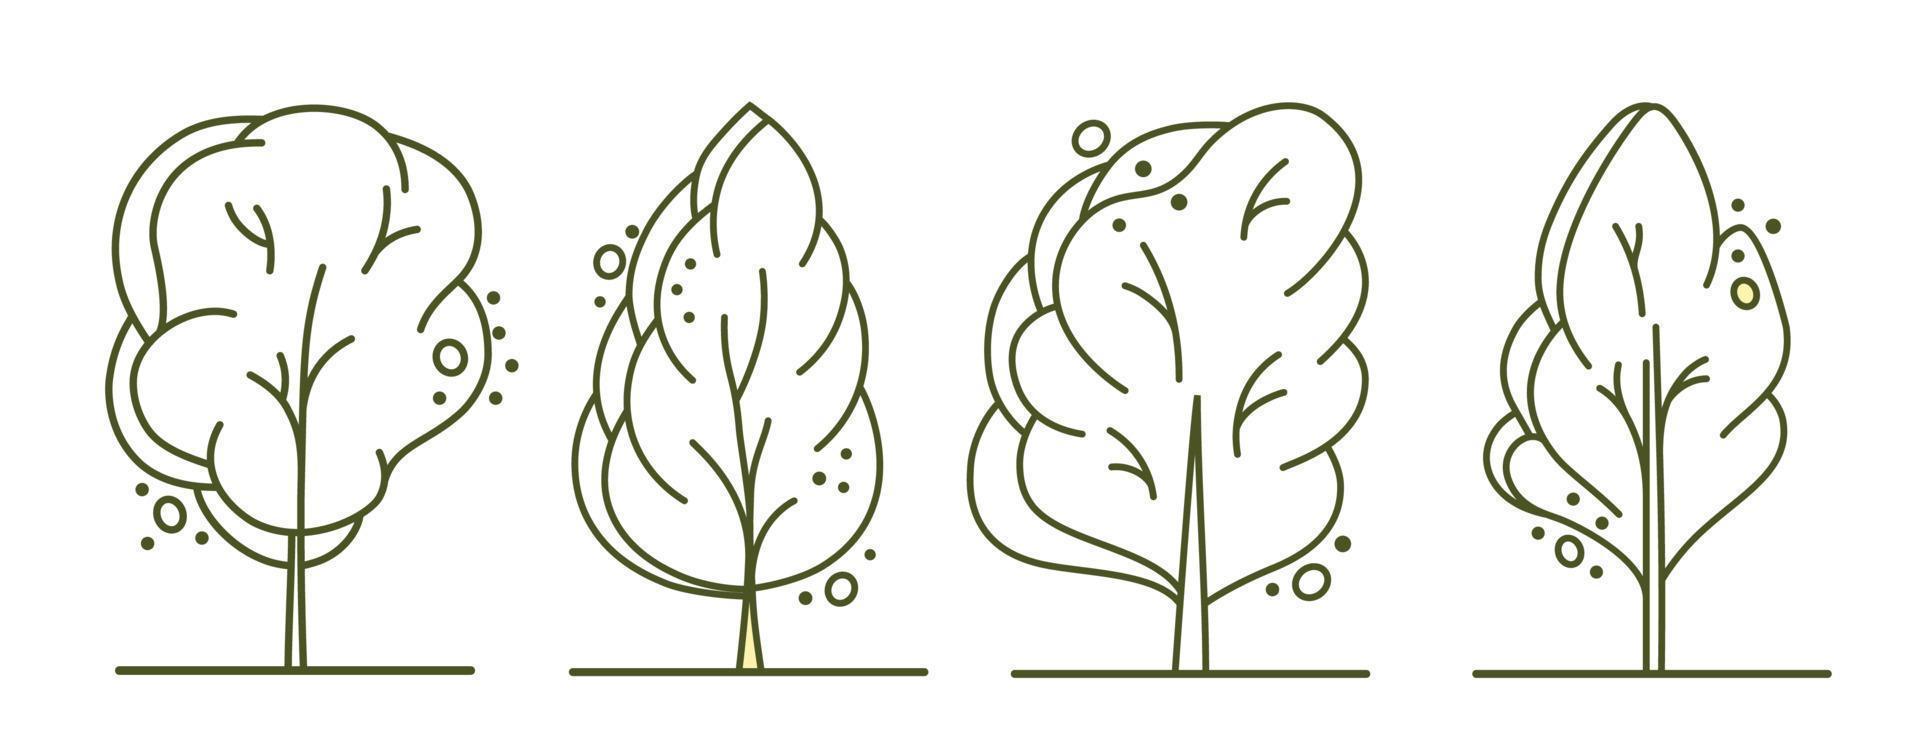 boom voor bouwkundig plannen. entourage ontwerp. divers bomen, struiken, en struiken, frontaal visie voor de landschap ontwerp plan. vector illustratie.